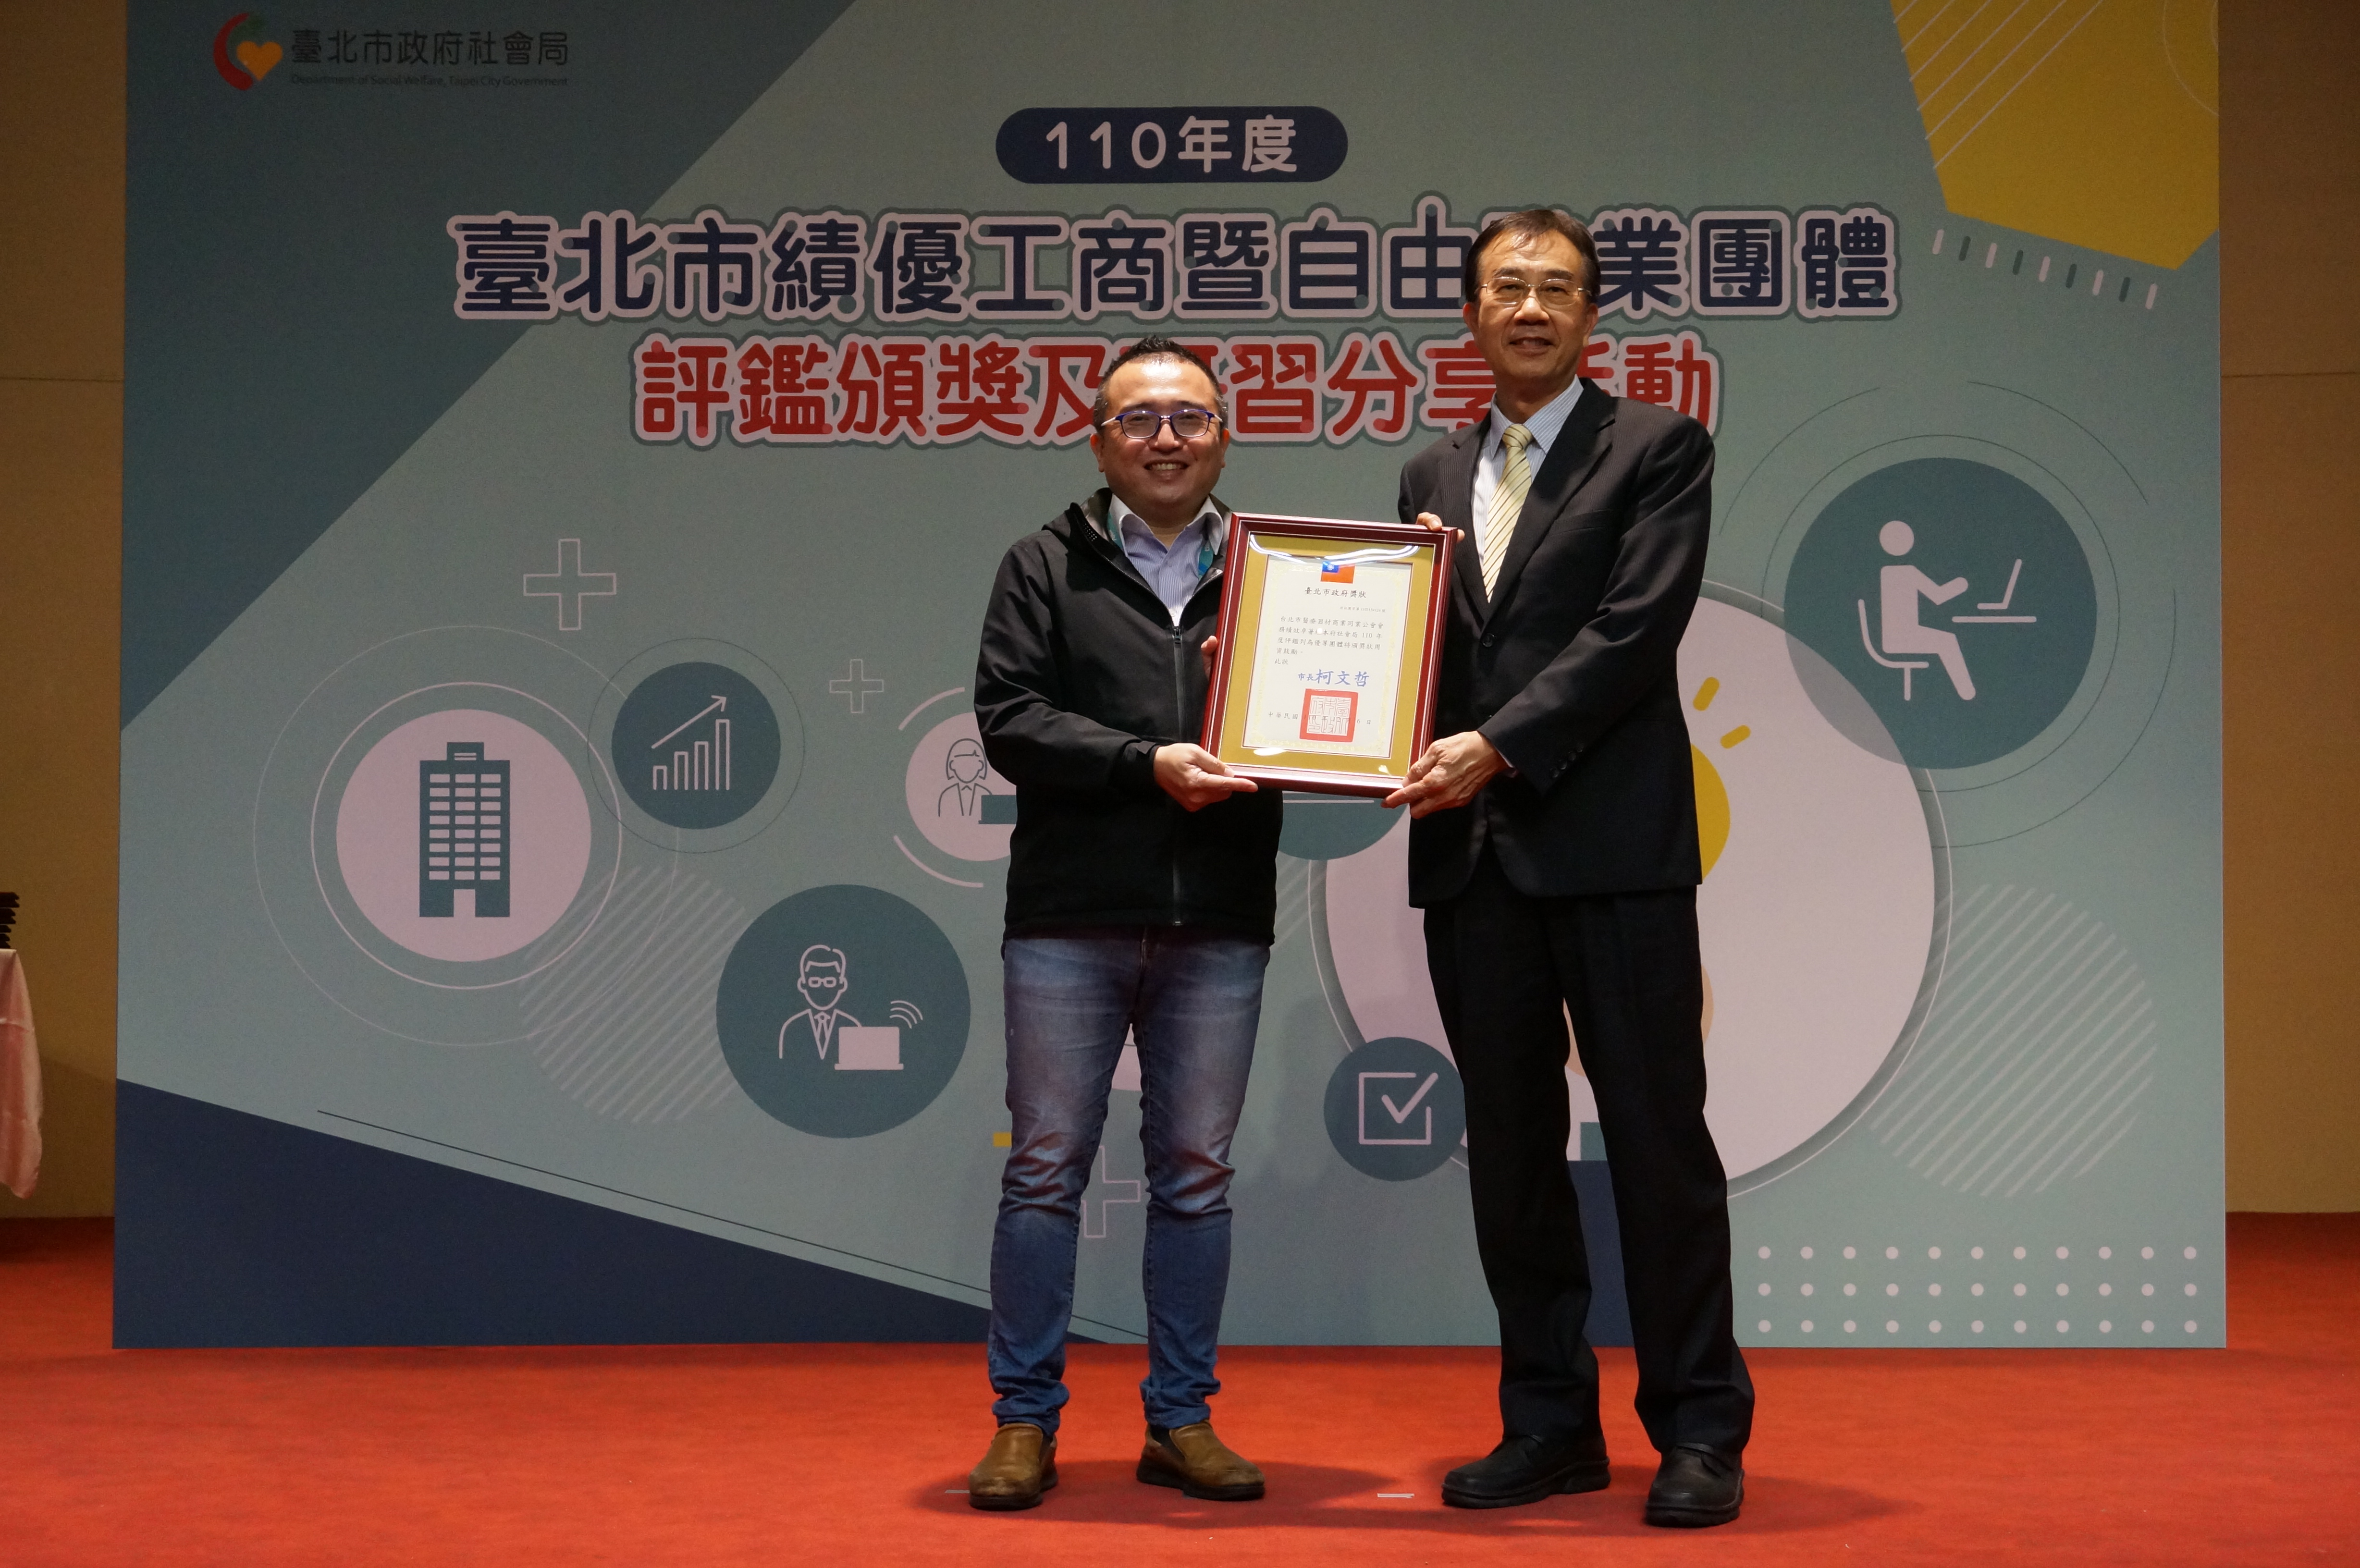 110年度台北市績優工商團體評鑑頒獎